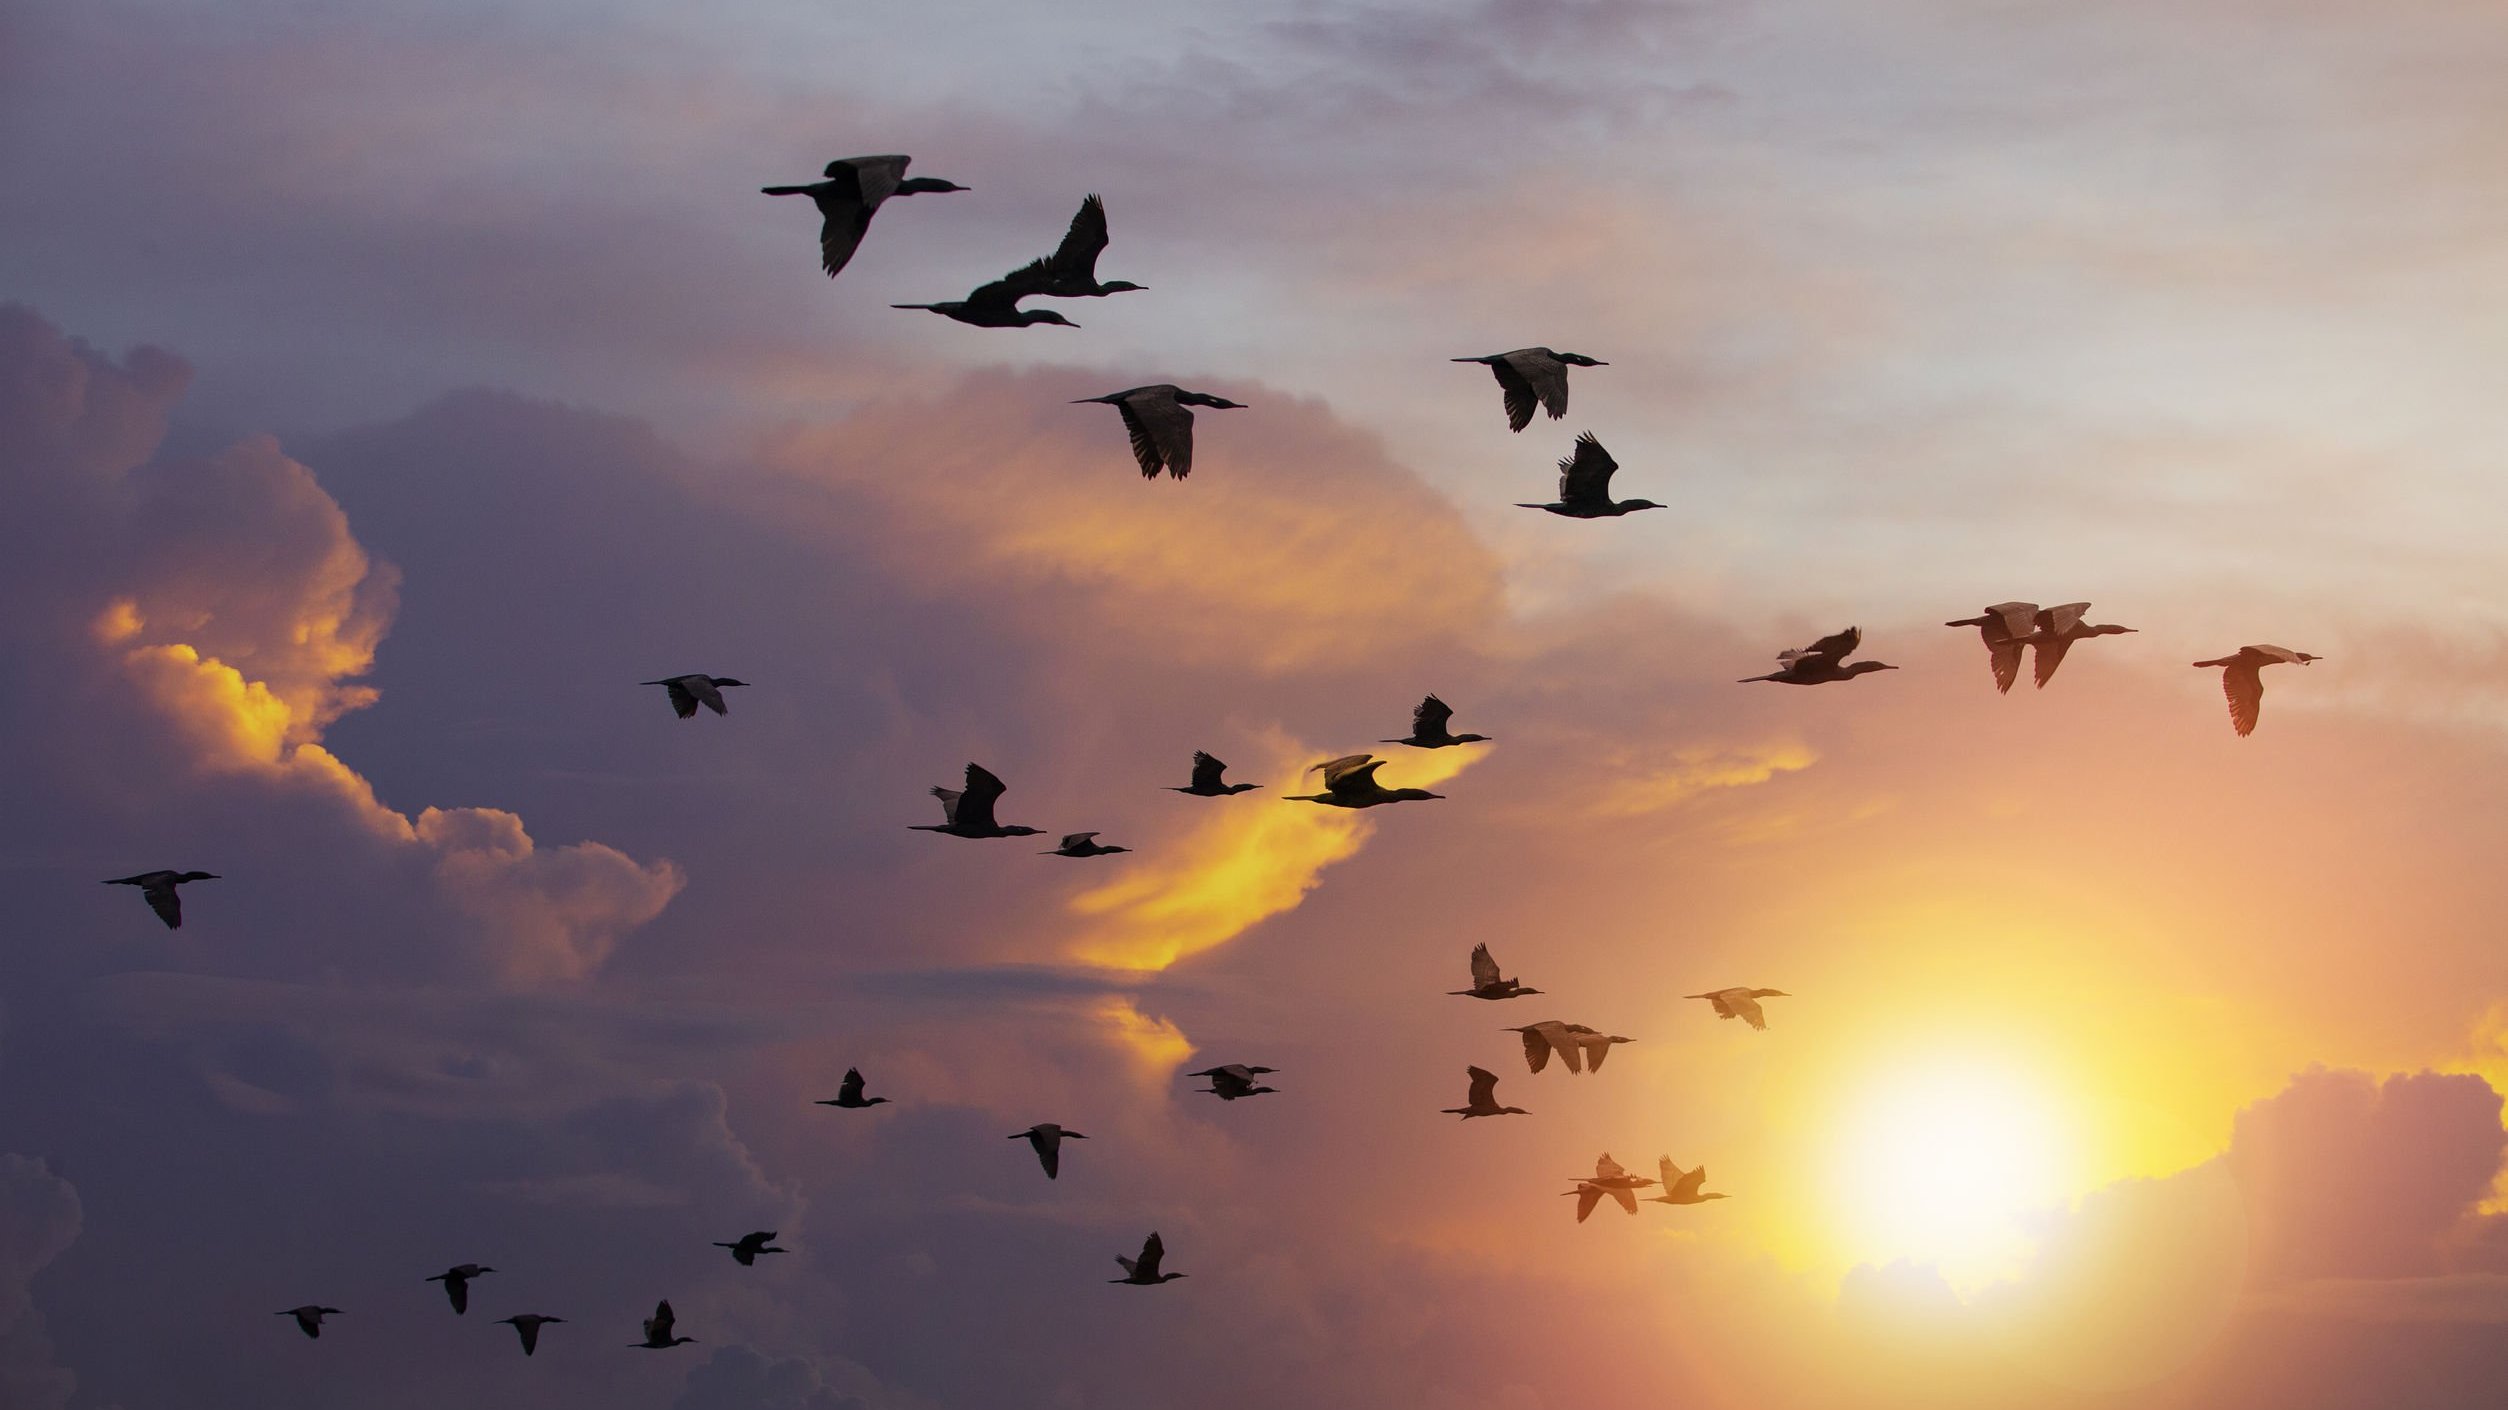 Céu no final de tarde, com o sol se pondo, e pássaros voando juntos entre as nuvens.